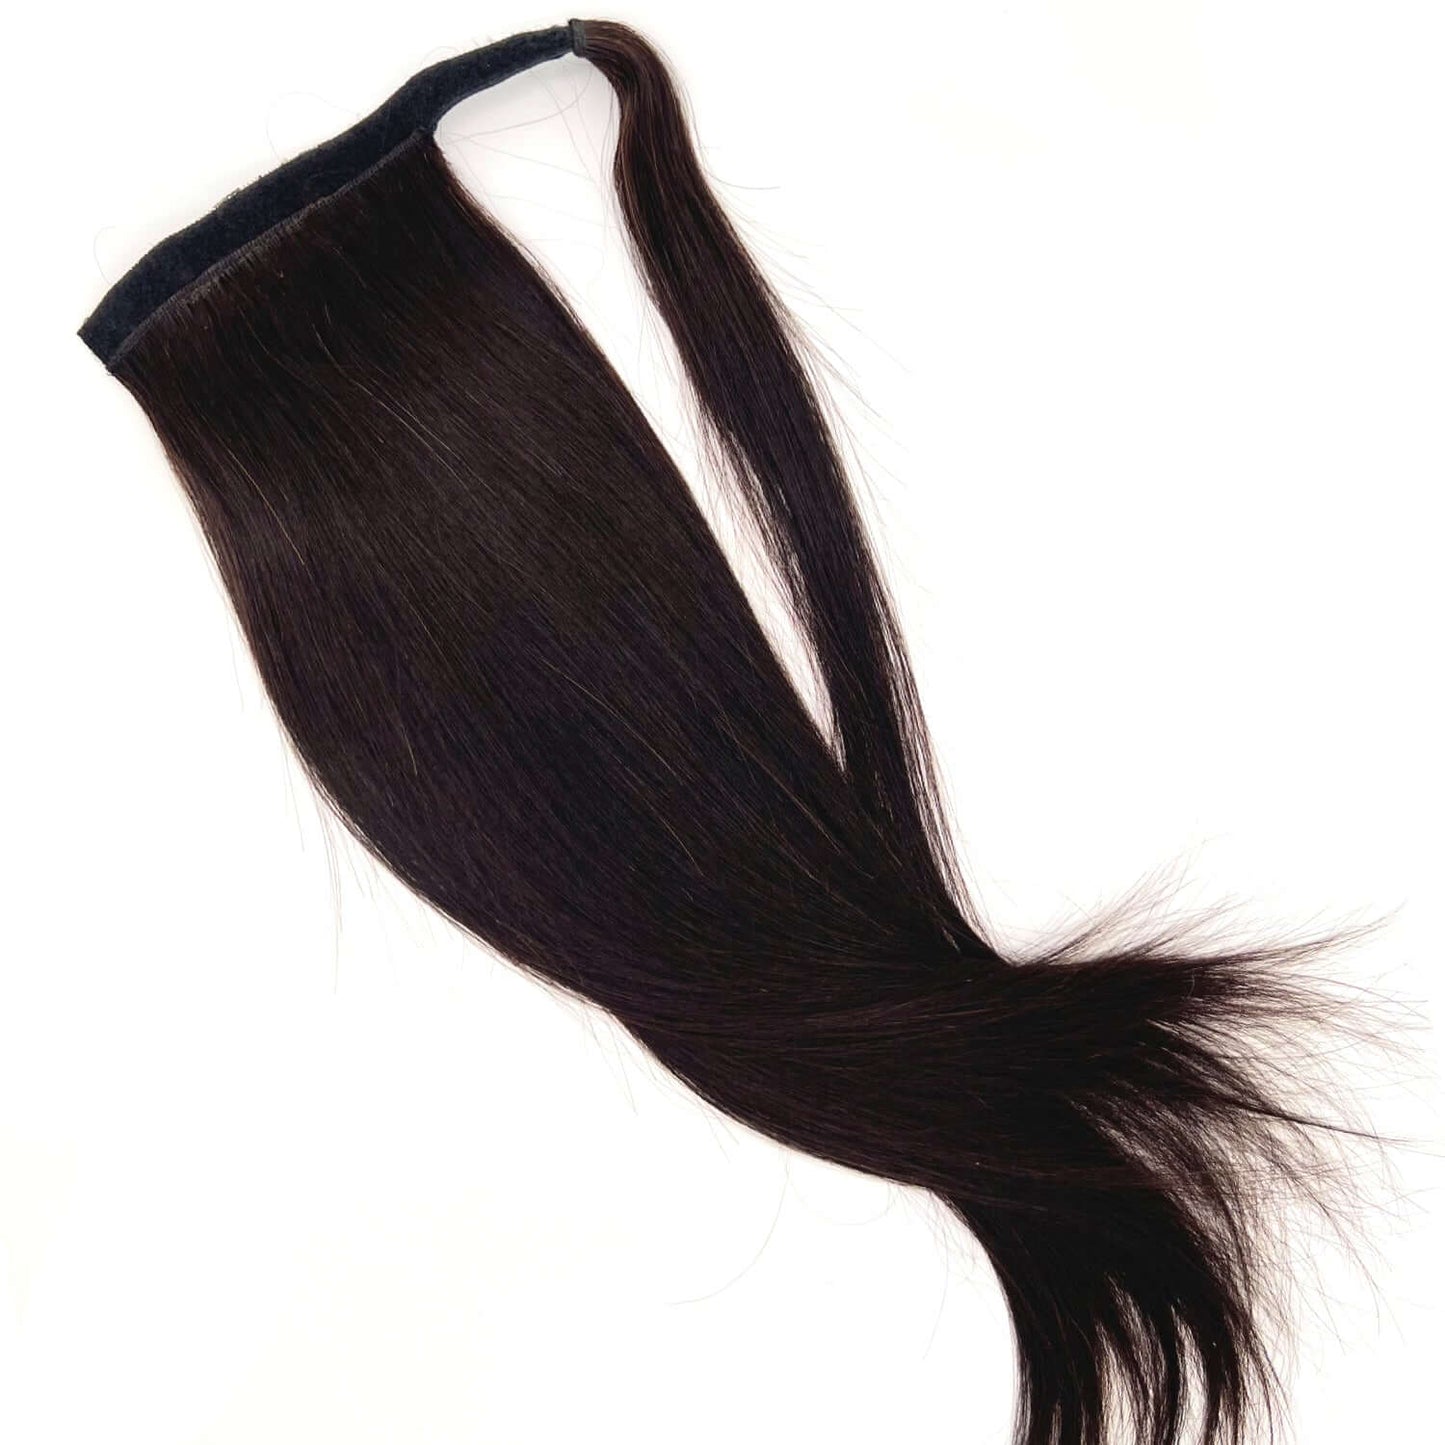 Ponytail äkta löshår - Mörkbrun #1B hair extensions - Hair by Grace Store